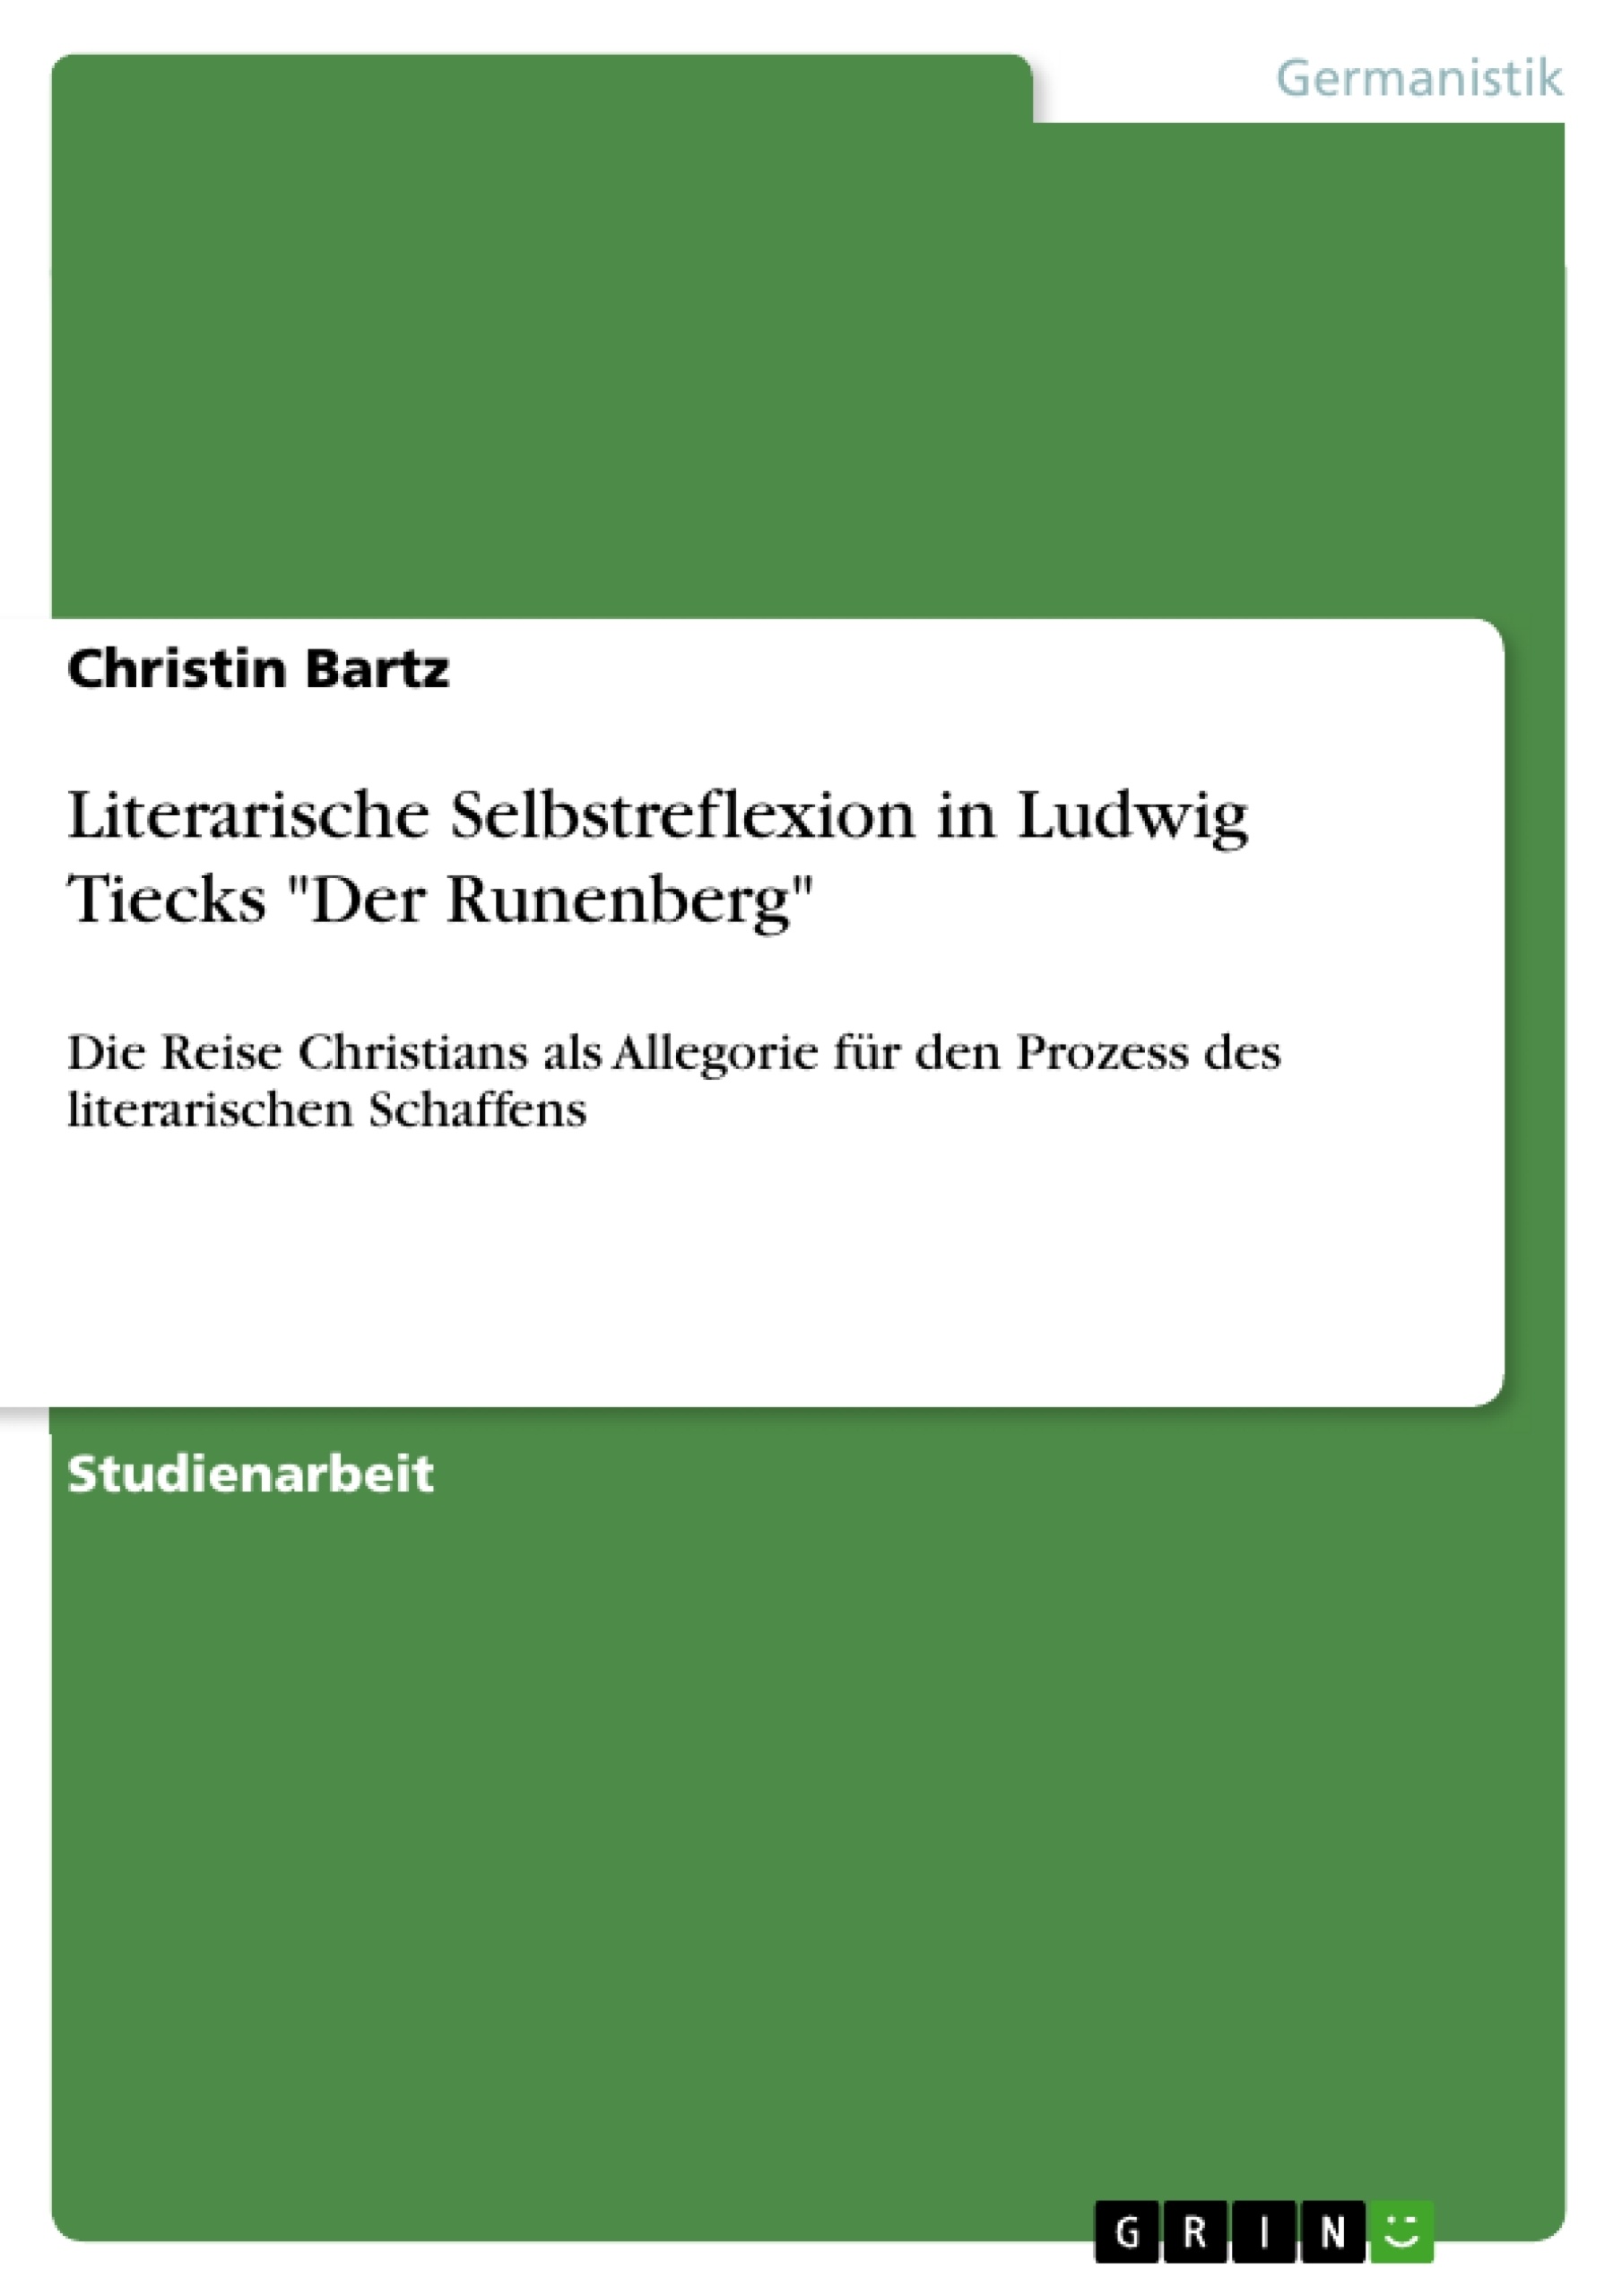 Titre: Literarische Selbstreflexion in Ludwig Tiecks "Der Runenberg"